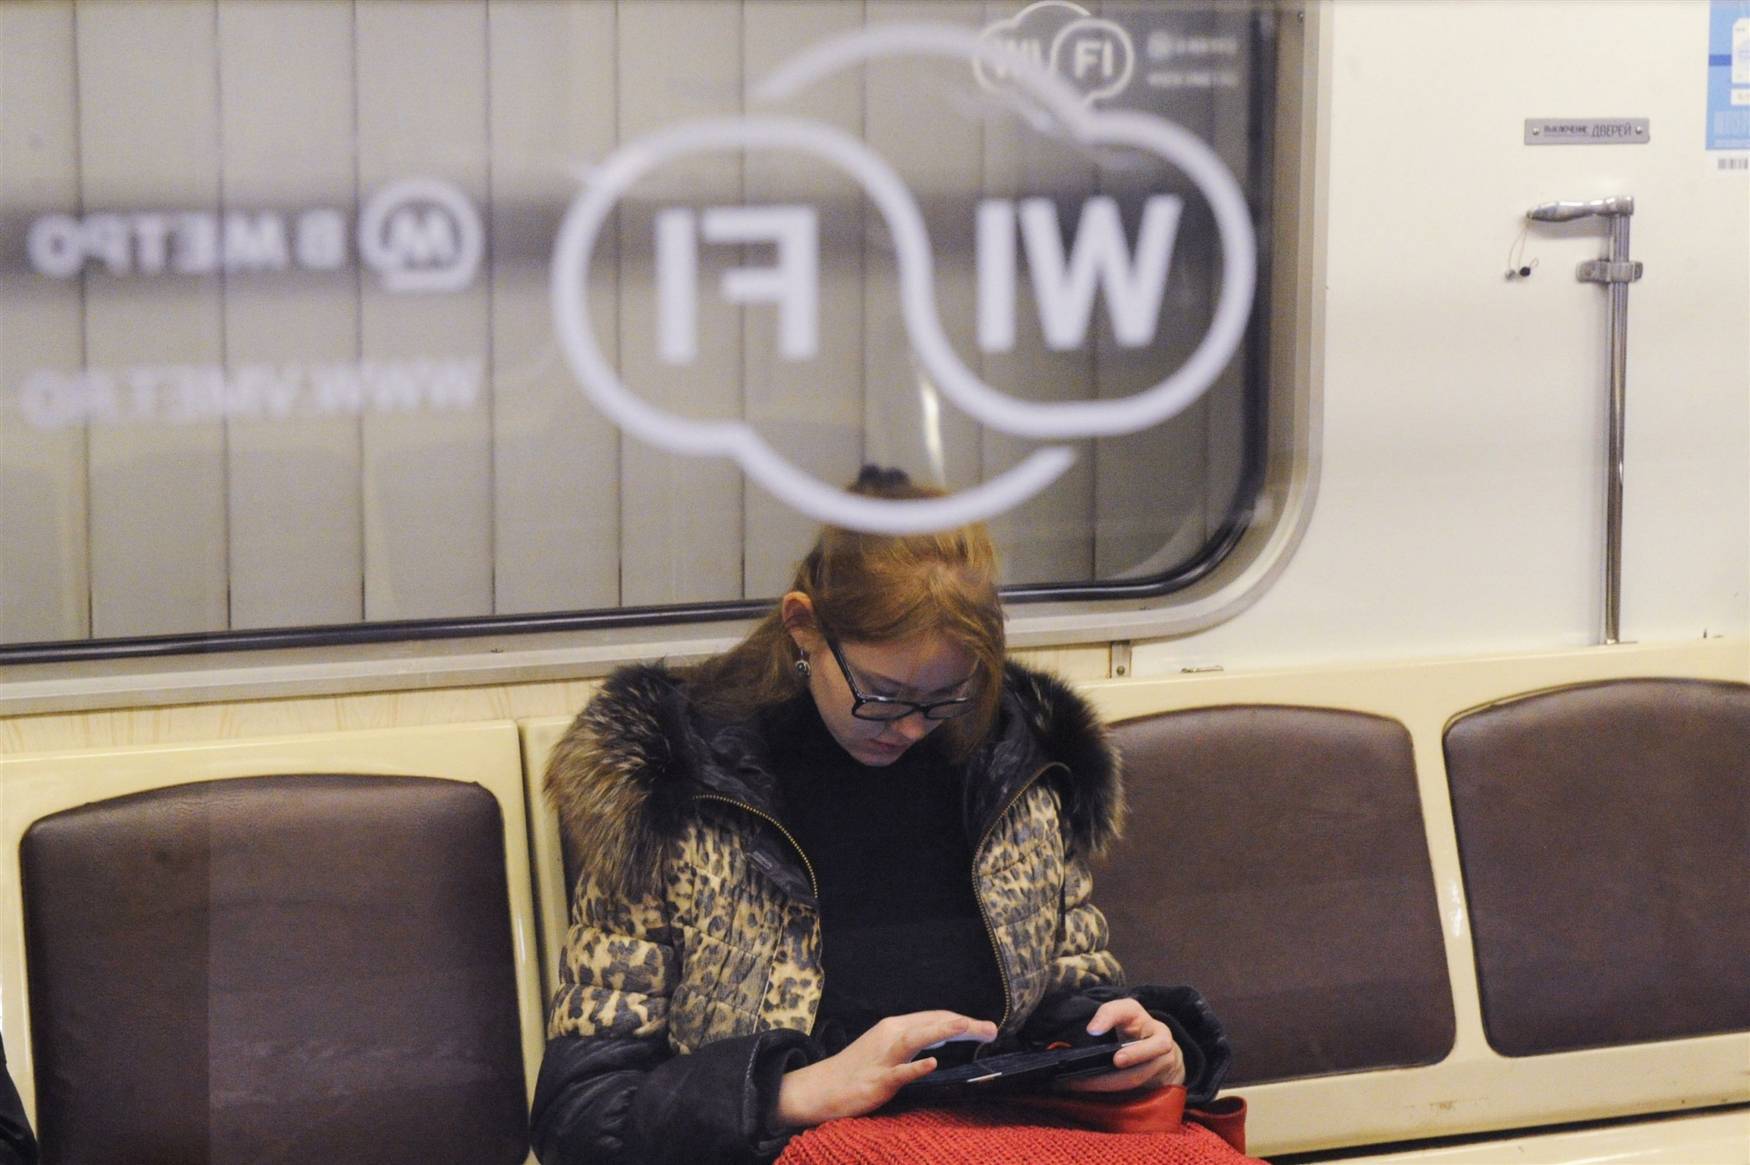 Все способы бесплатной авторизации для сети wifi в метро и возможные проблемы